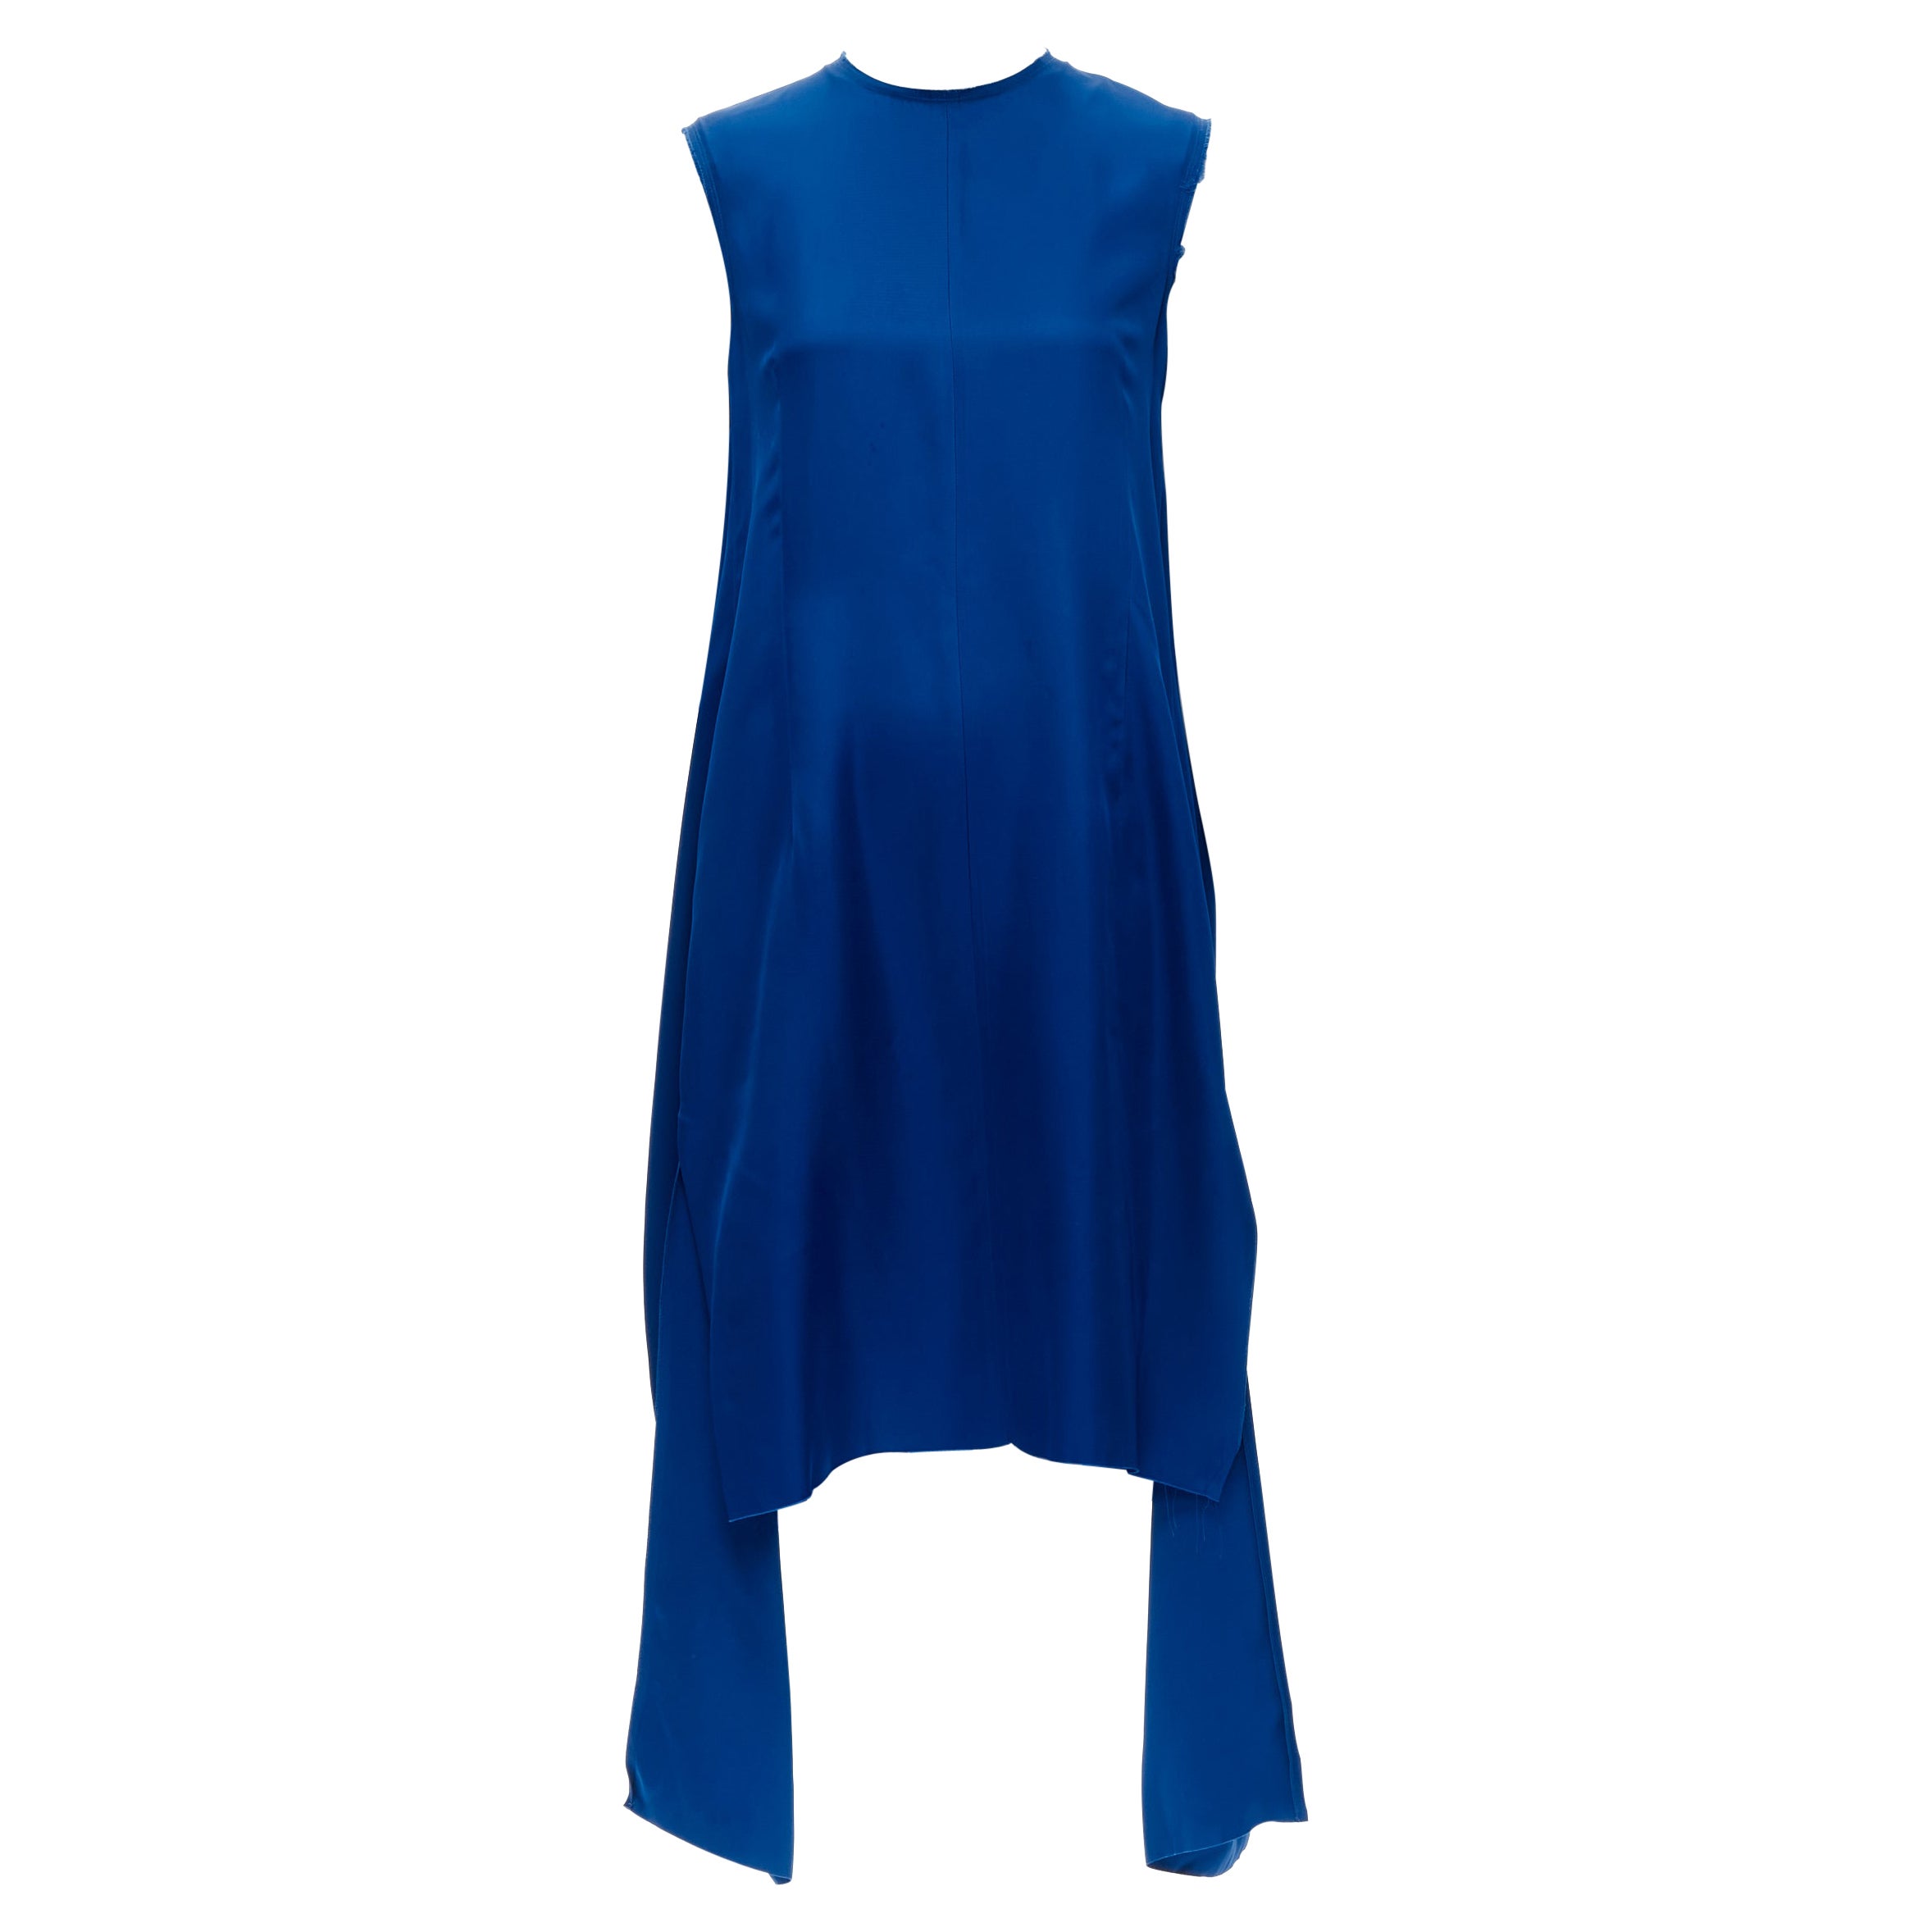 MARNI Kobaltblaues Kleid aus Viskose mit rohem, ausgefranstem Rand und gefaltetem Rückenausschnitt IT38 XS